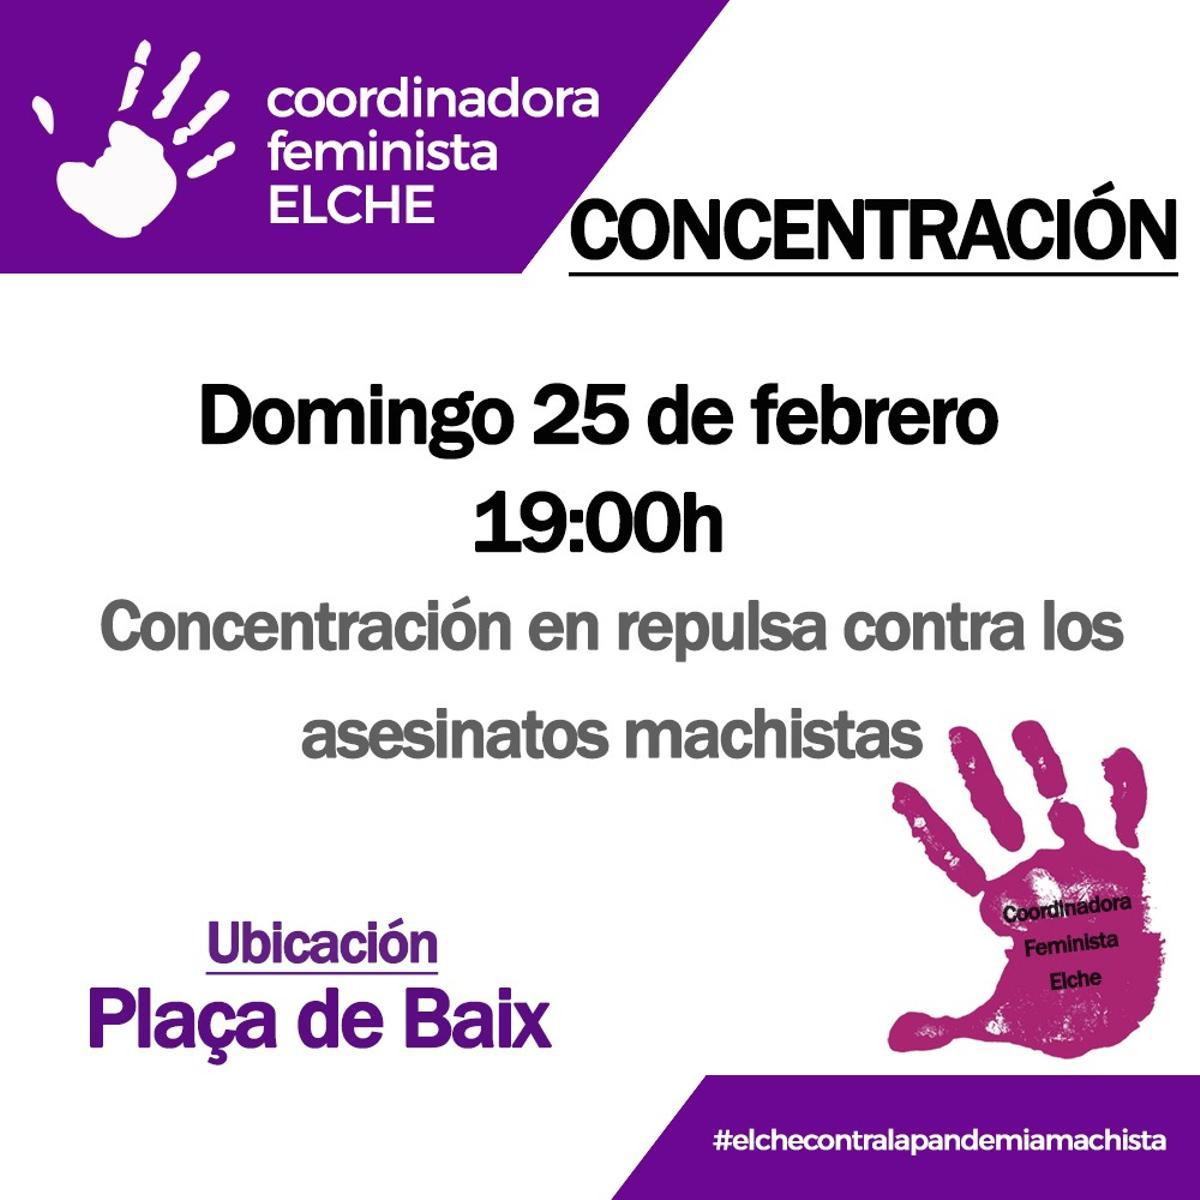 El cartel de la concentración de la Coordinadora Feminista para este domingo en la Plaça Baix de Elche